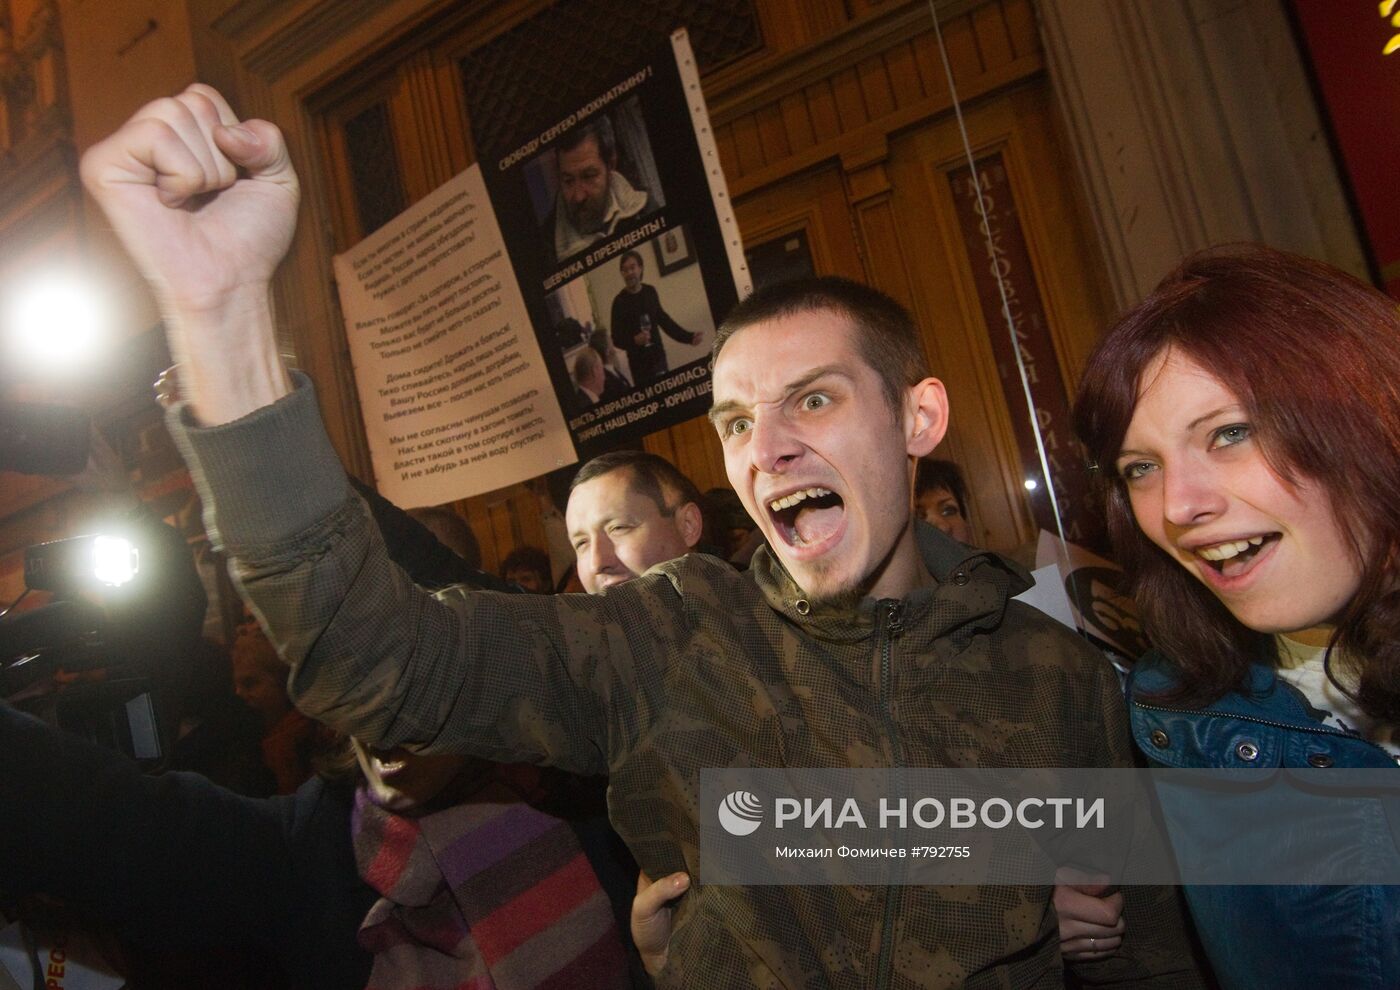 Акция в защиту 31-ой статьи Конституции прошла в Москве